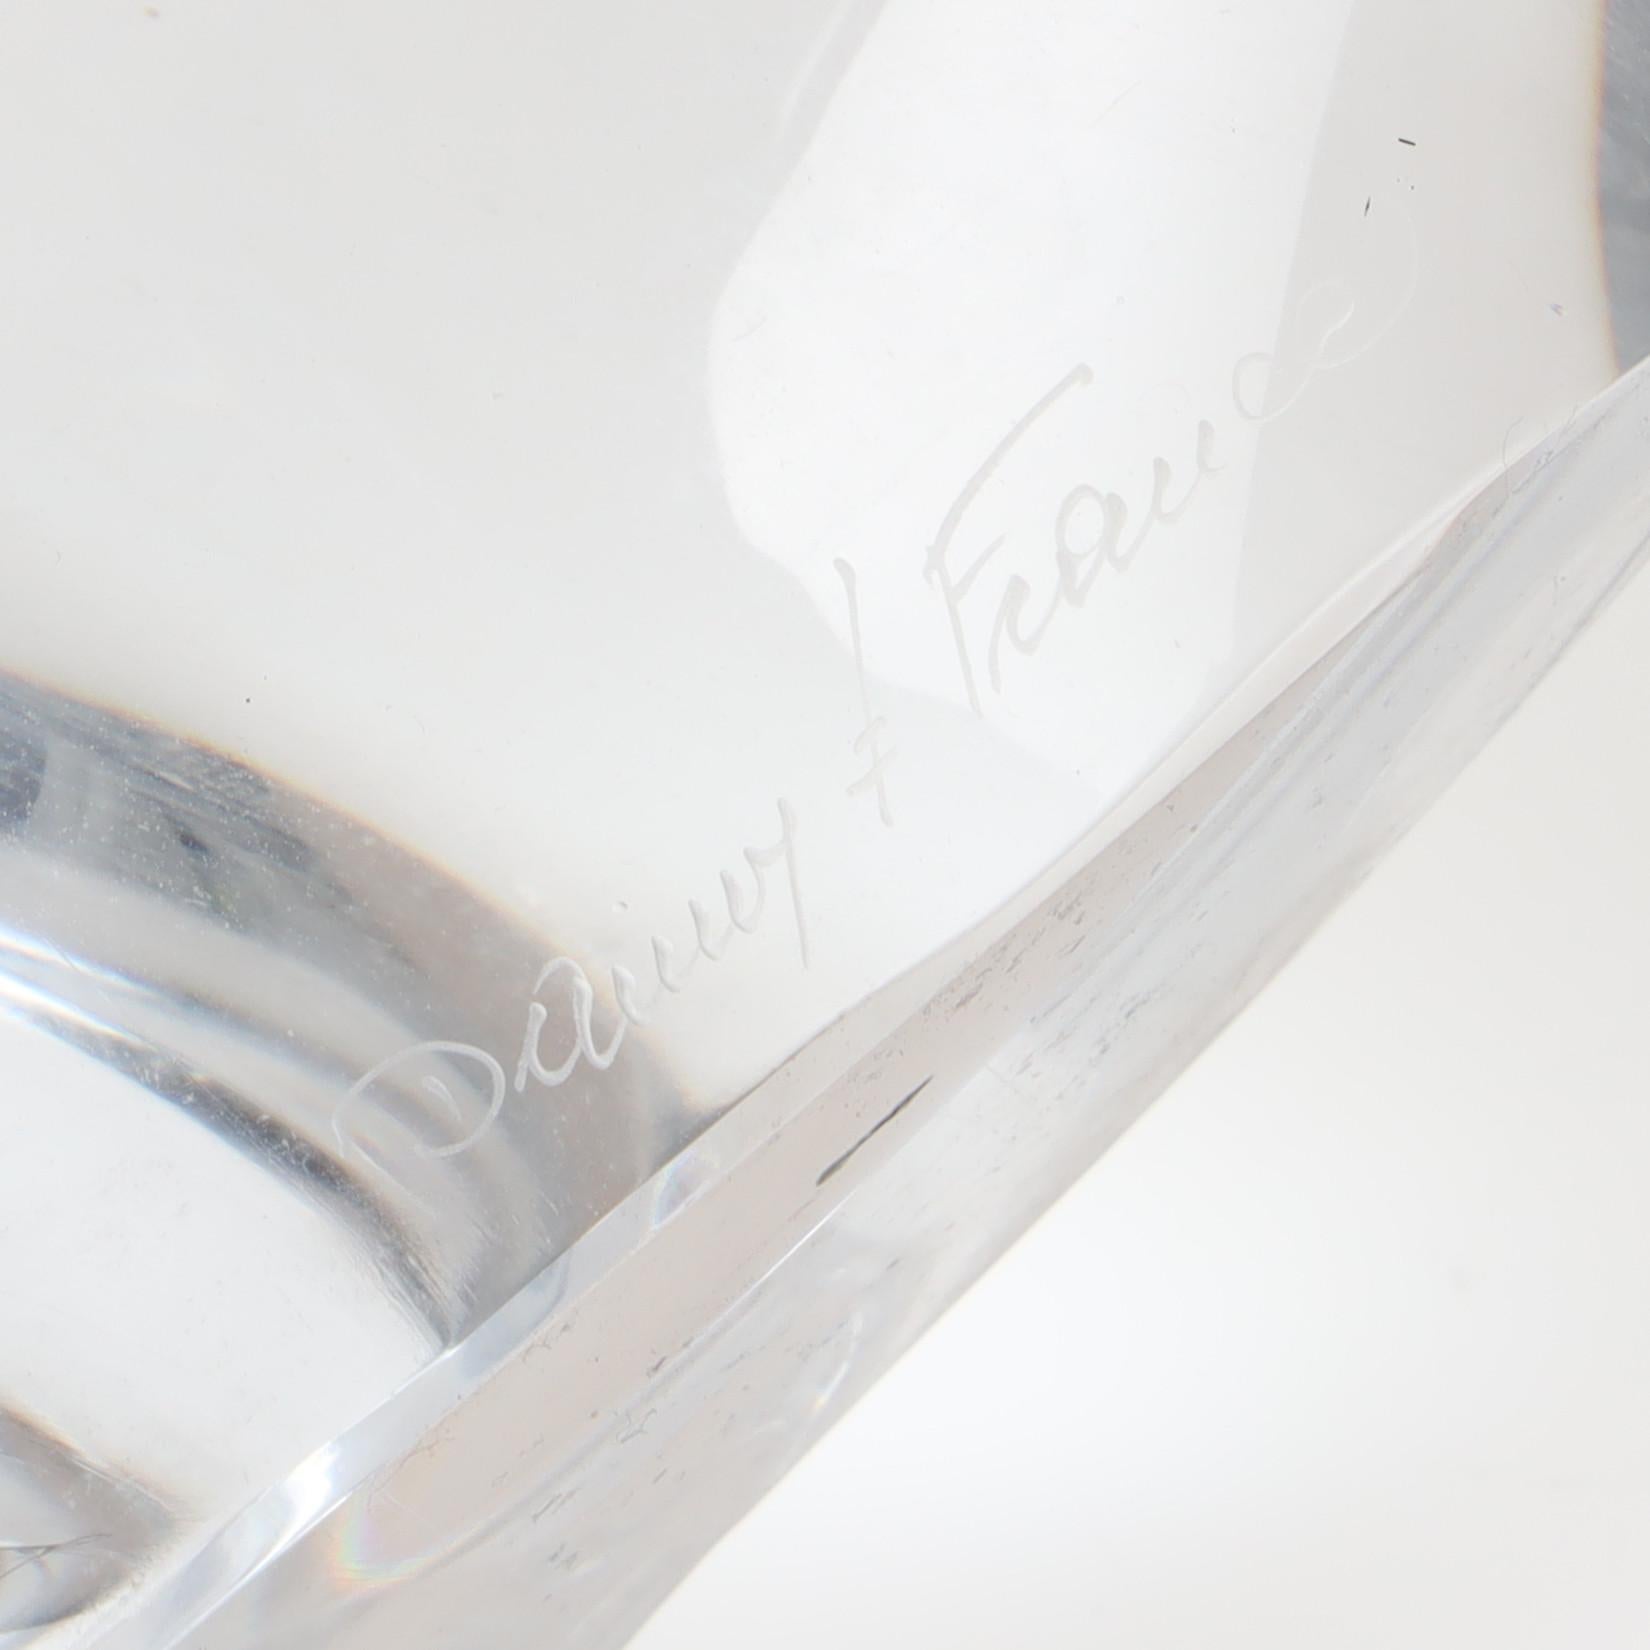 Lampe à poser Daum en clair  cristal moulé, France 1960. Signé Daum sur la partie inférieure 
22 cm/ 9 pouces  hauteur sans abat-jour
Bon état 